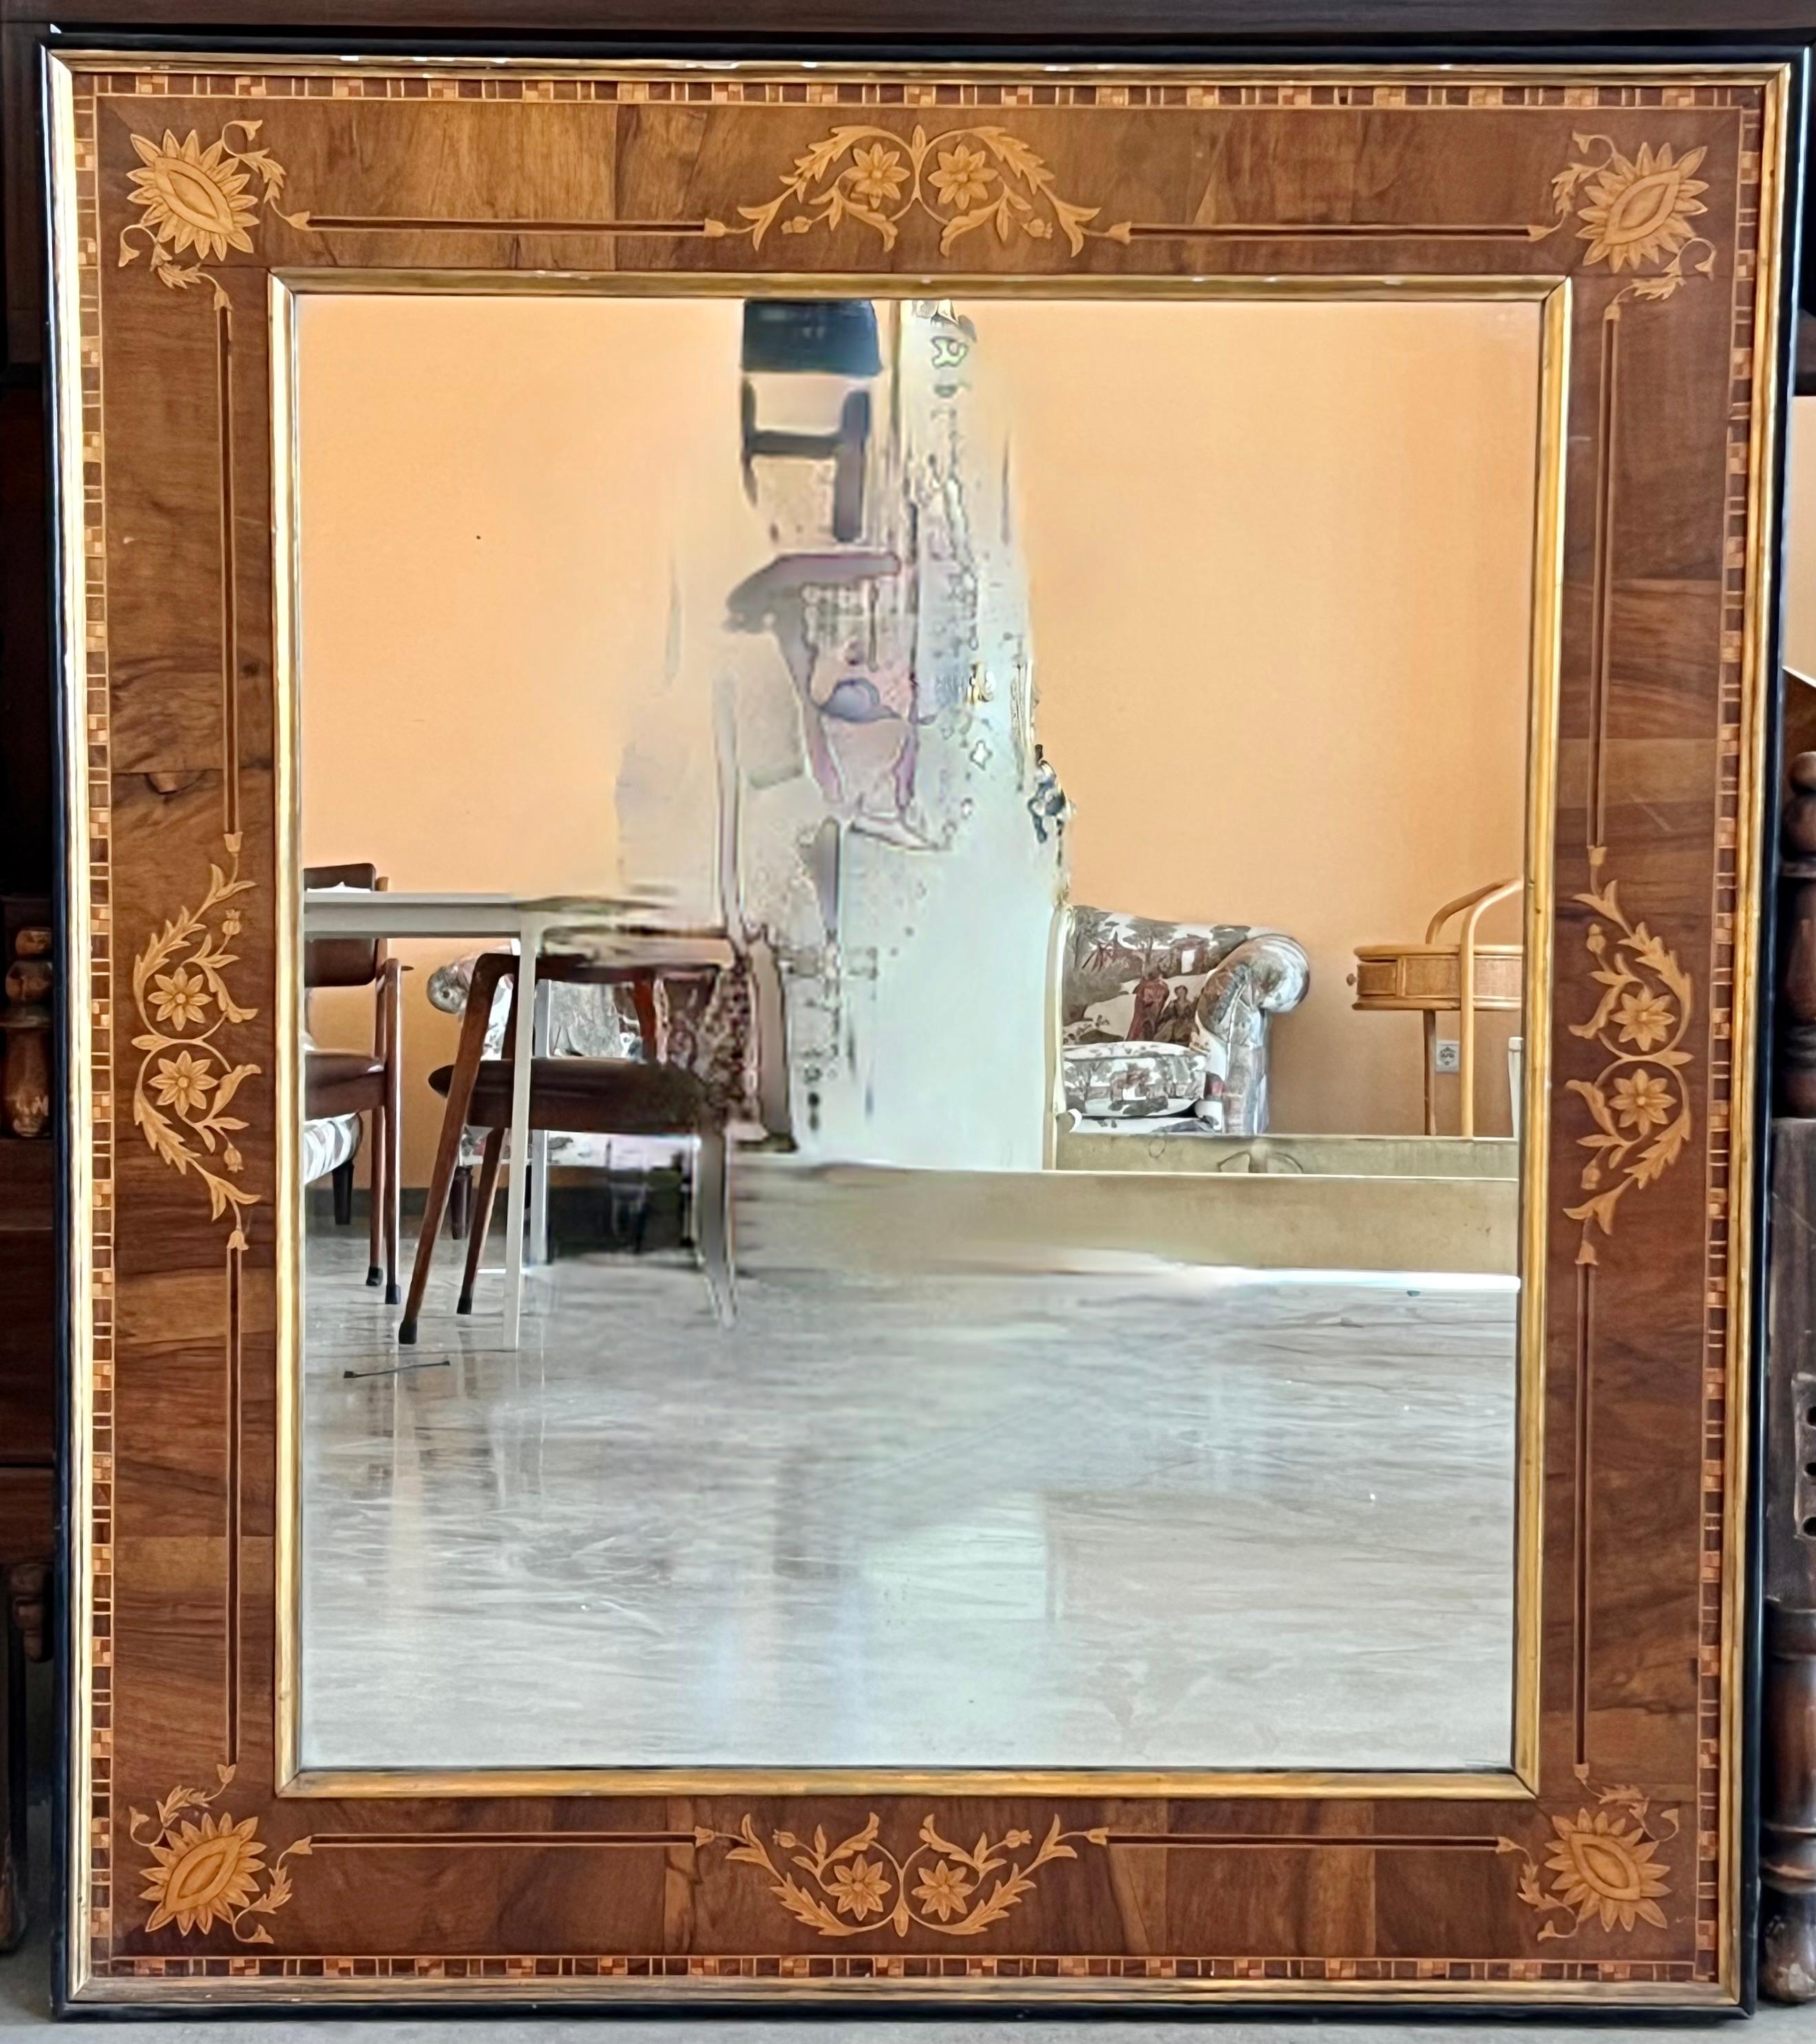 Über
Dies ist eine schöne antike spanische Flamme Mahagoni und Intarsien Wandspiegel, ca. 1840.

Der Mahagoni-Rahmen ist mit einer durchgehenden Intarsienbordüre versehen.

Die Qualität und Handwerkskunst dieses atemberaubenden Stücks ist absolut